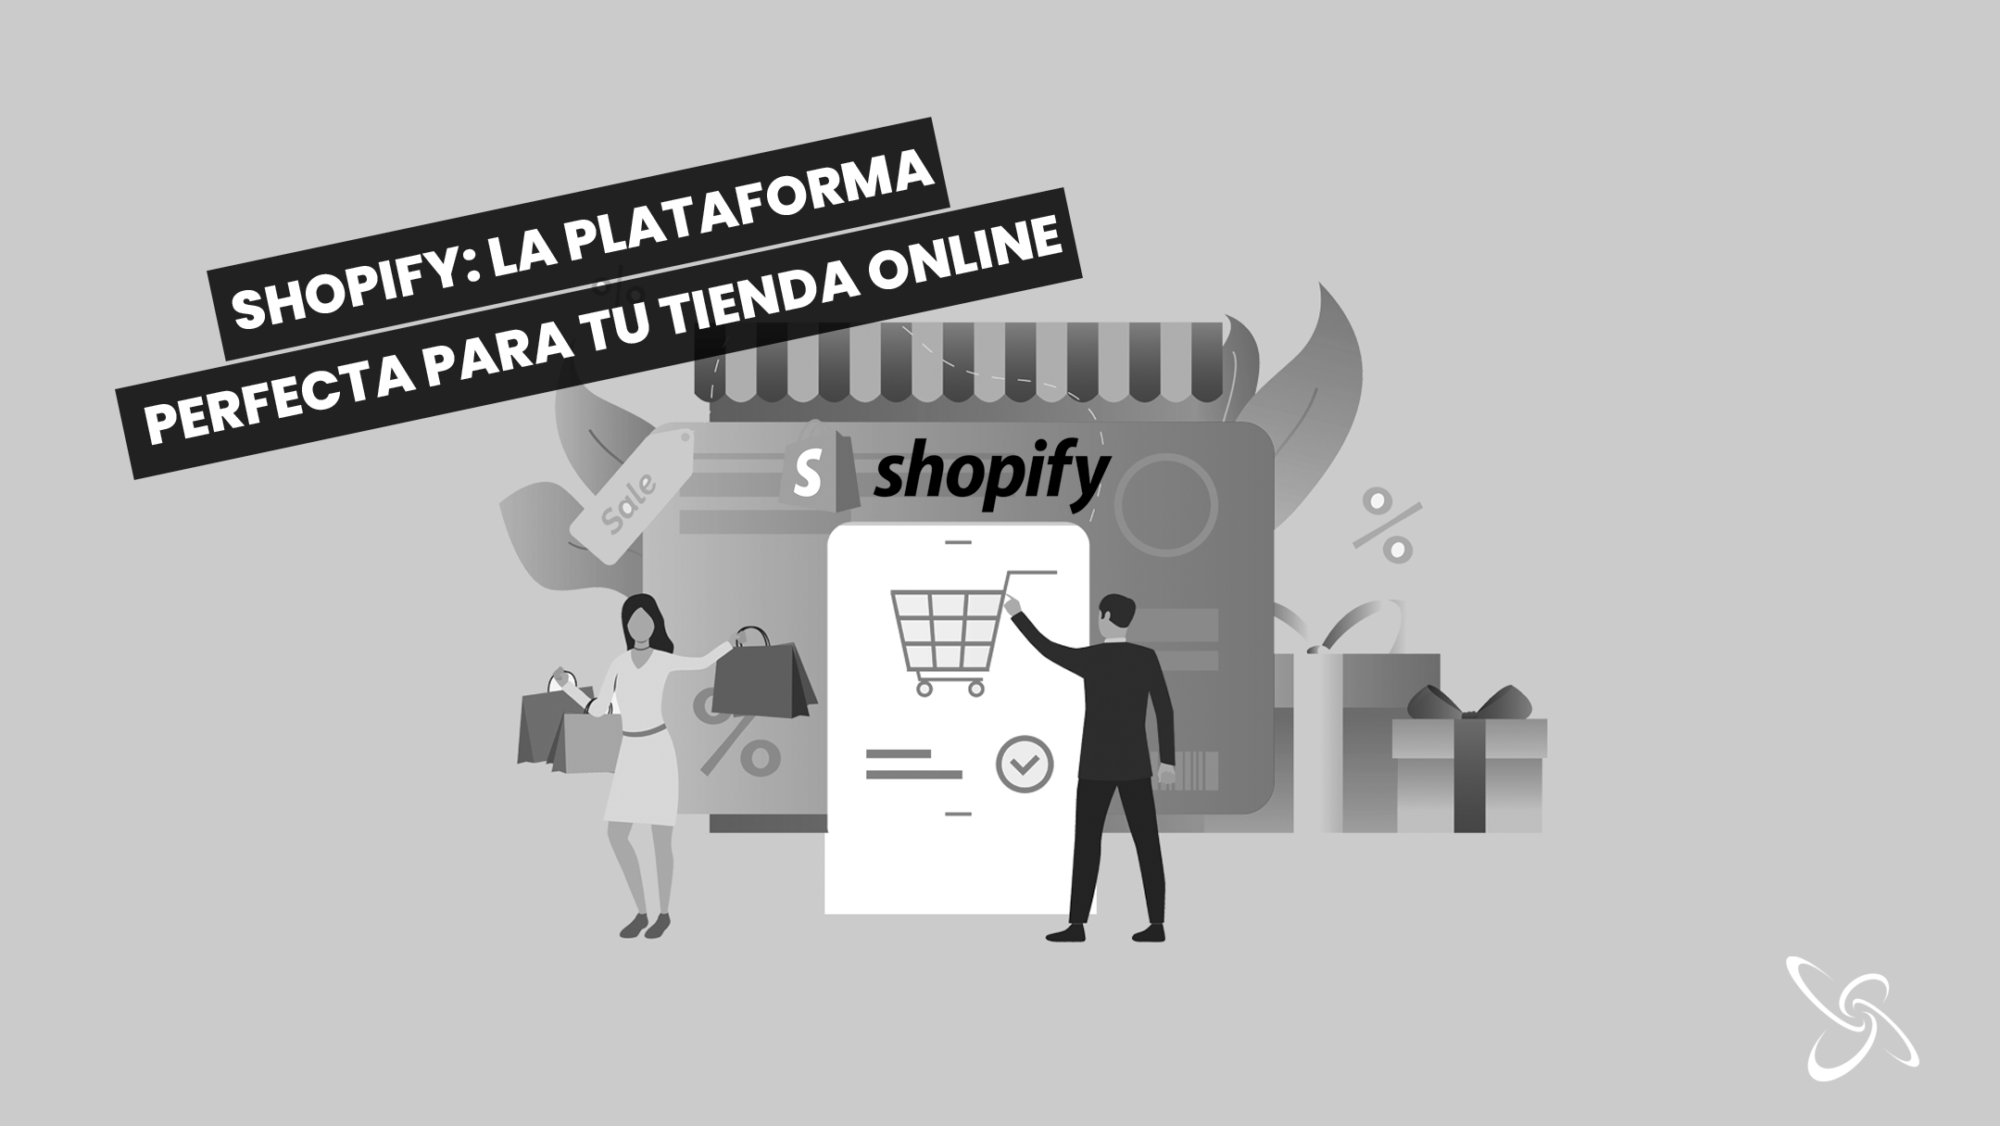 Shopify: la plataforma perfecta para tu tienda online